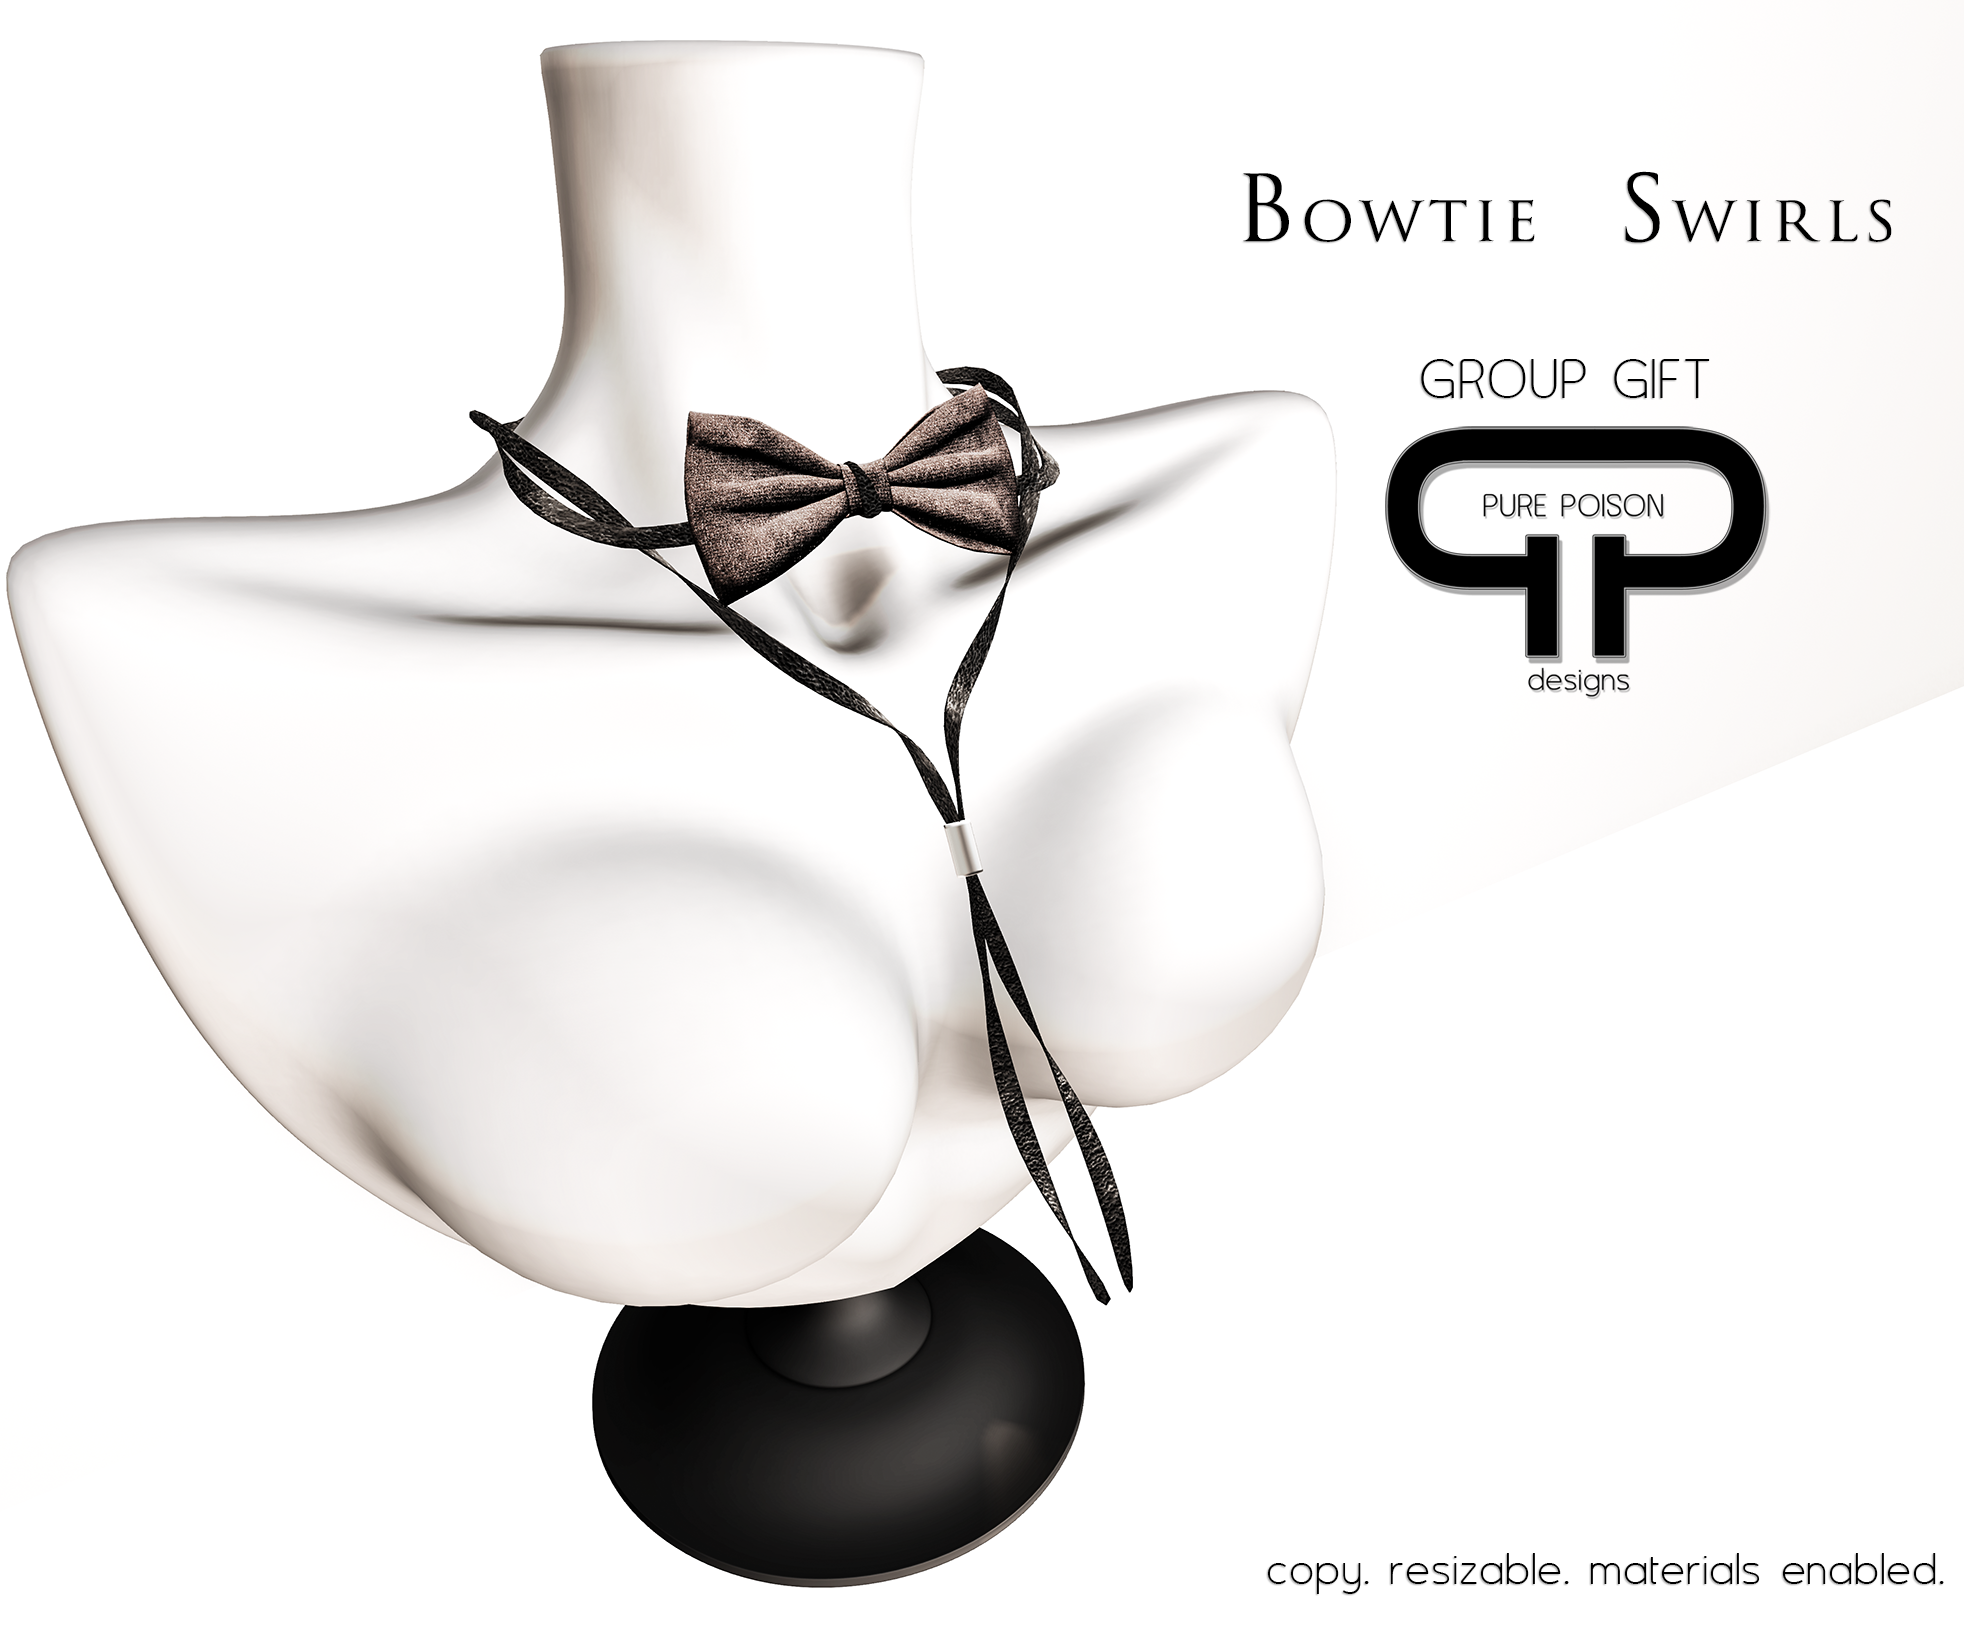 Pure Poison – Bowtie Swirls – GROUP GIFT